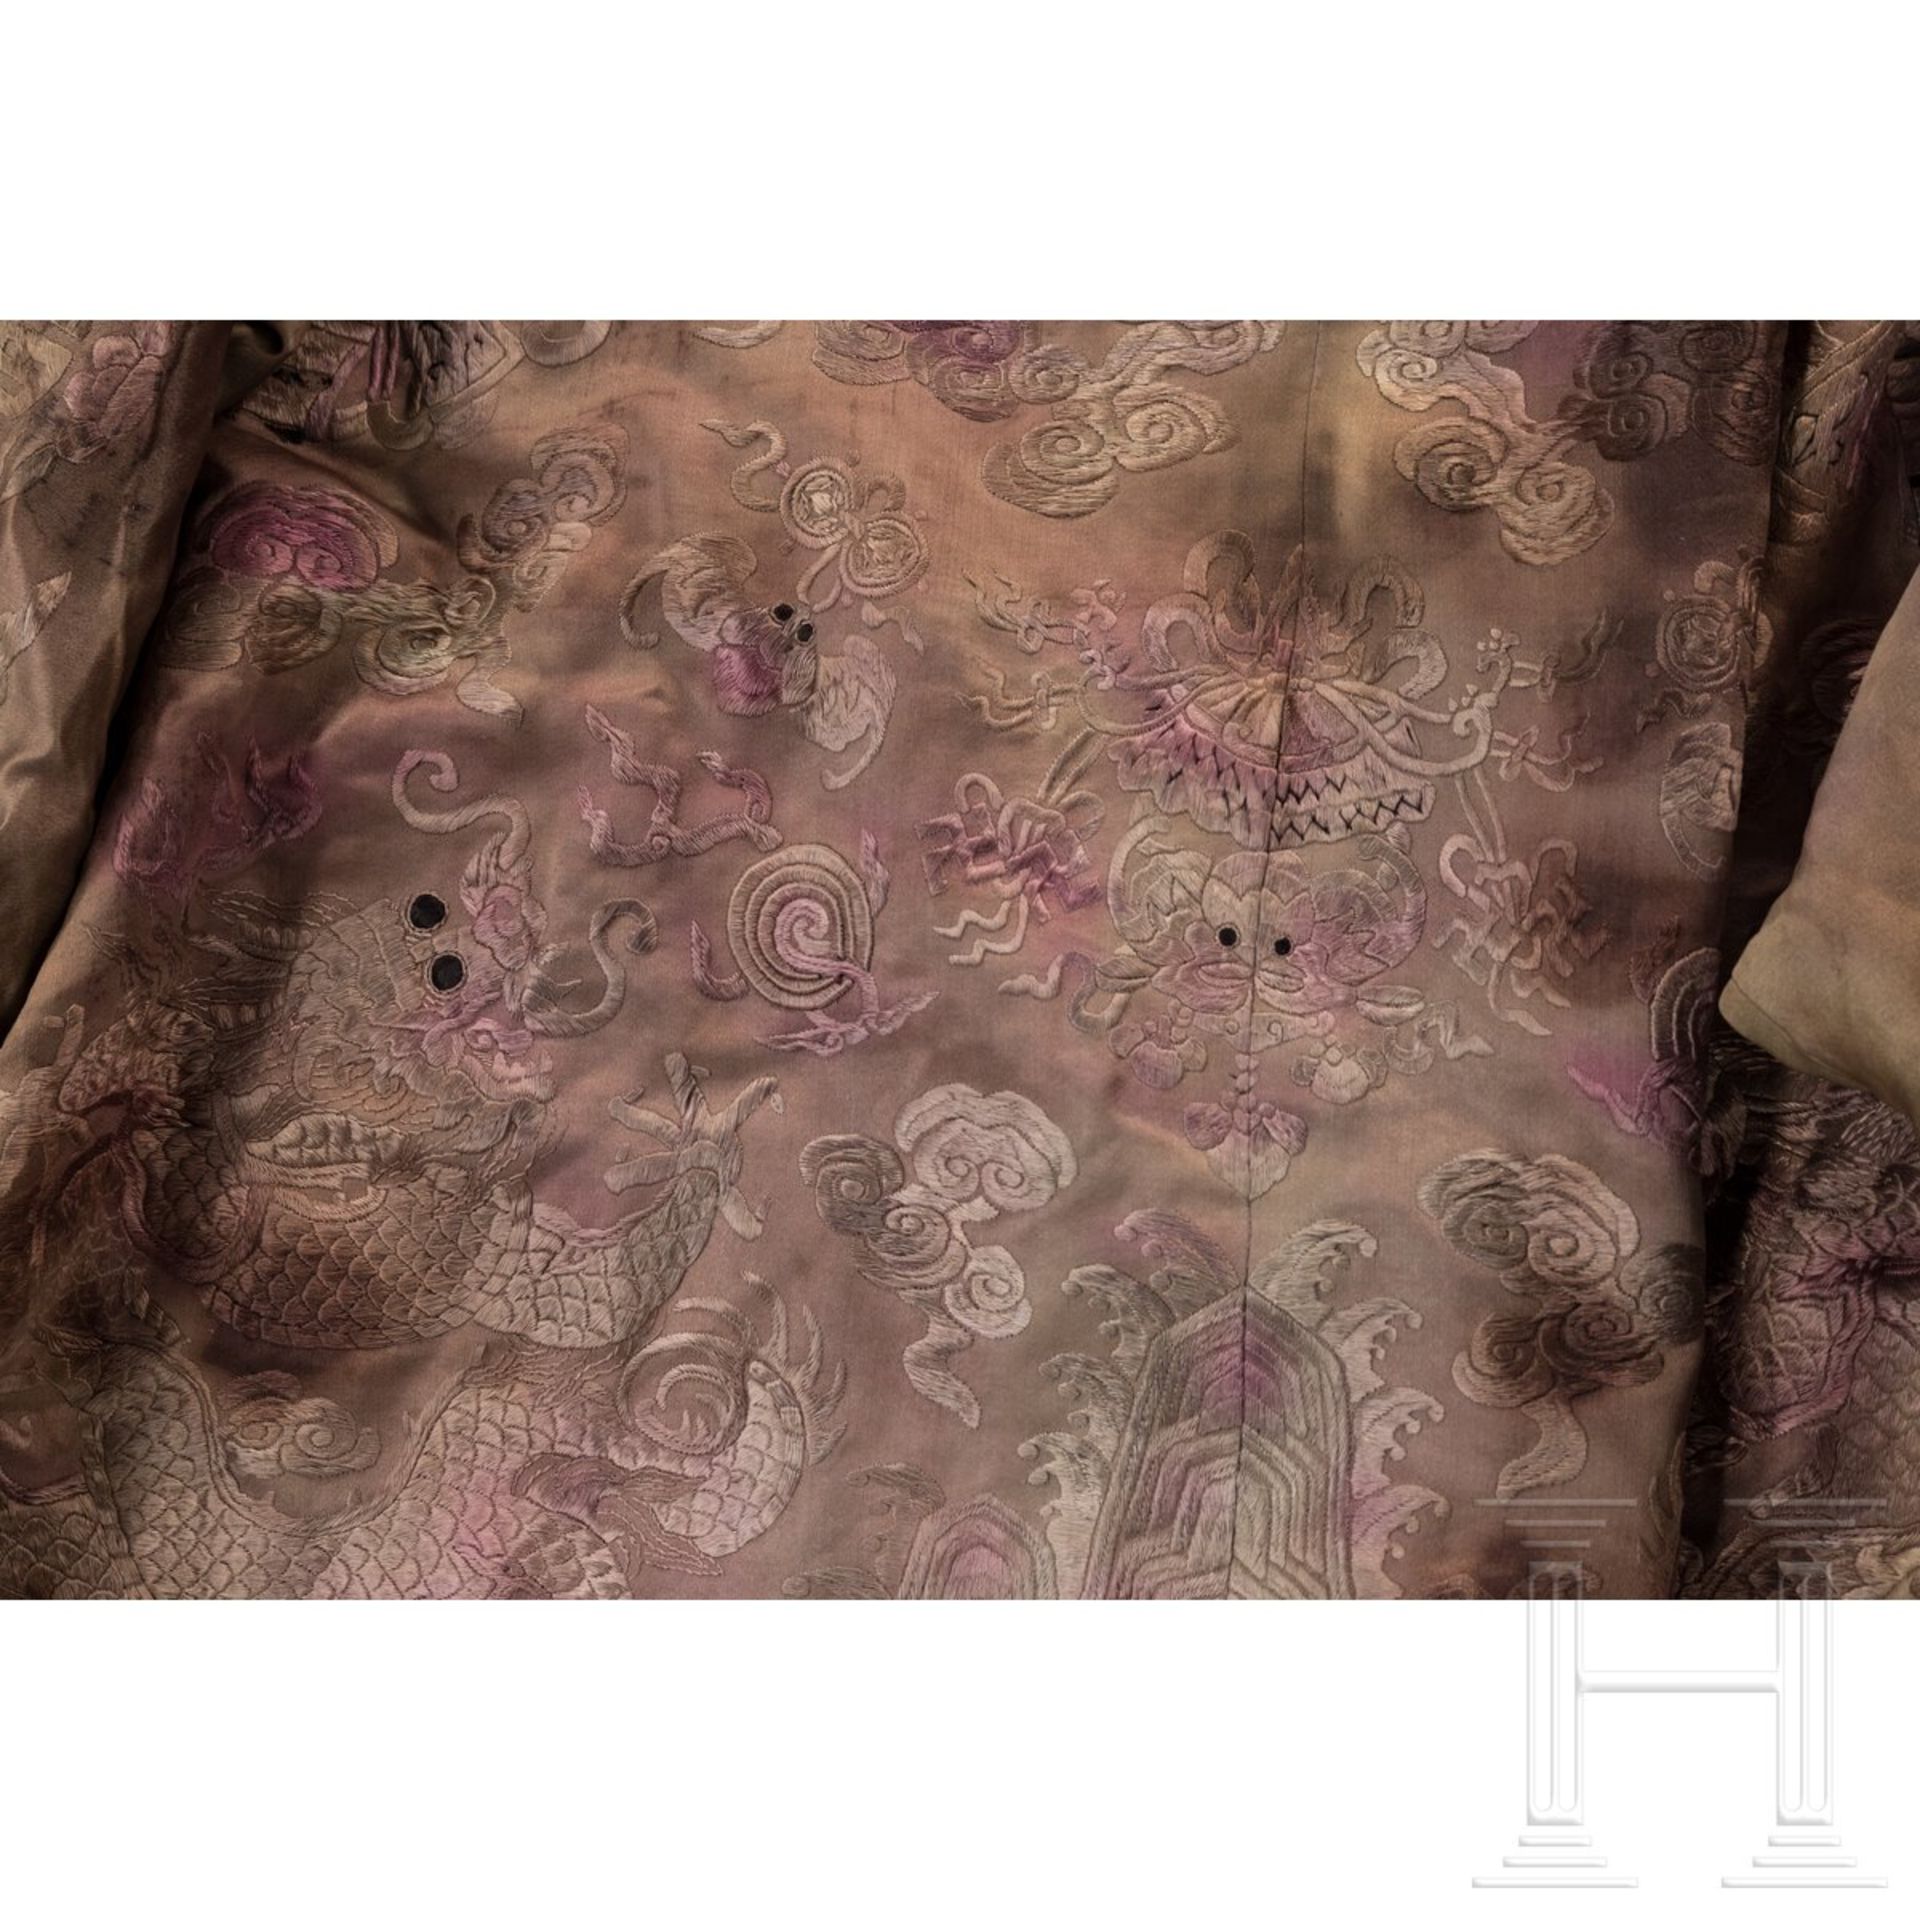 Aufwendig bestickte Damenrobe aus der kaiserlichen Familie, China, Ming-Dynastie oder später - Image 6 of 8